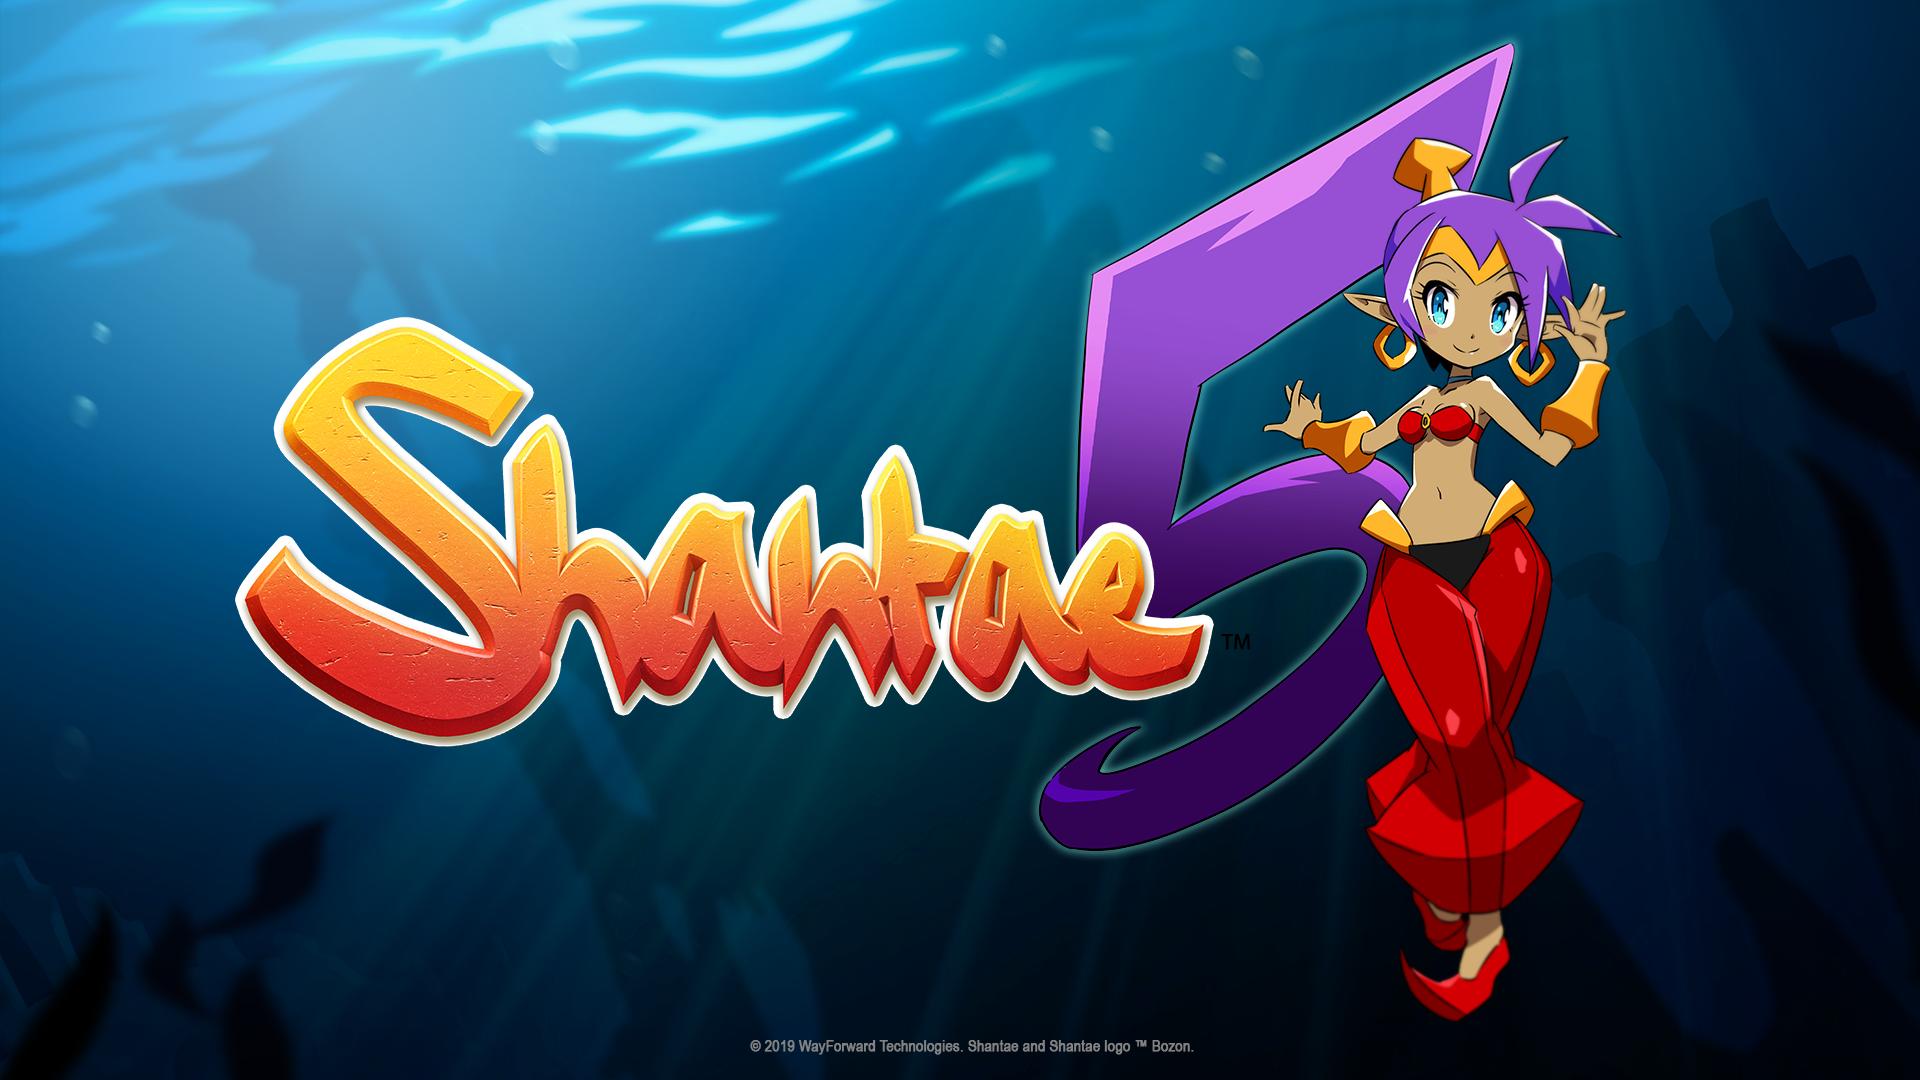 Shantae 5 è stato annunciato ufficialmente per Nintendo Switch